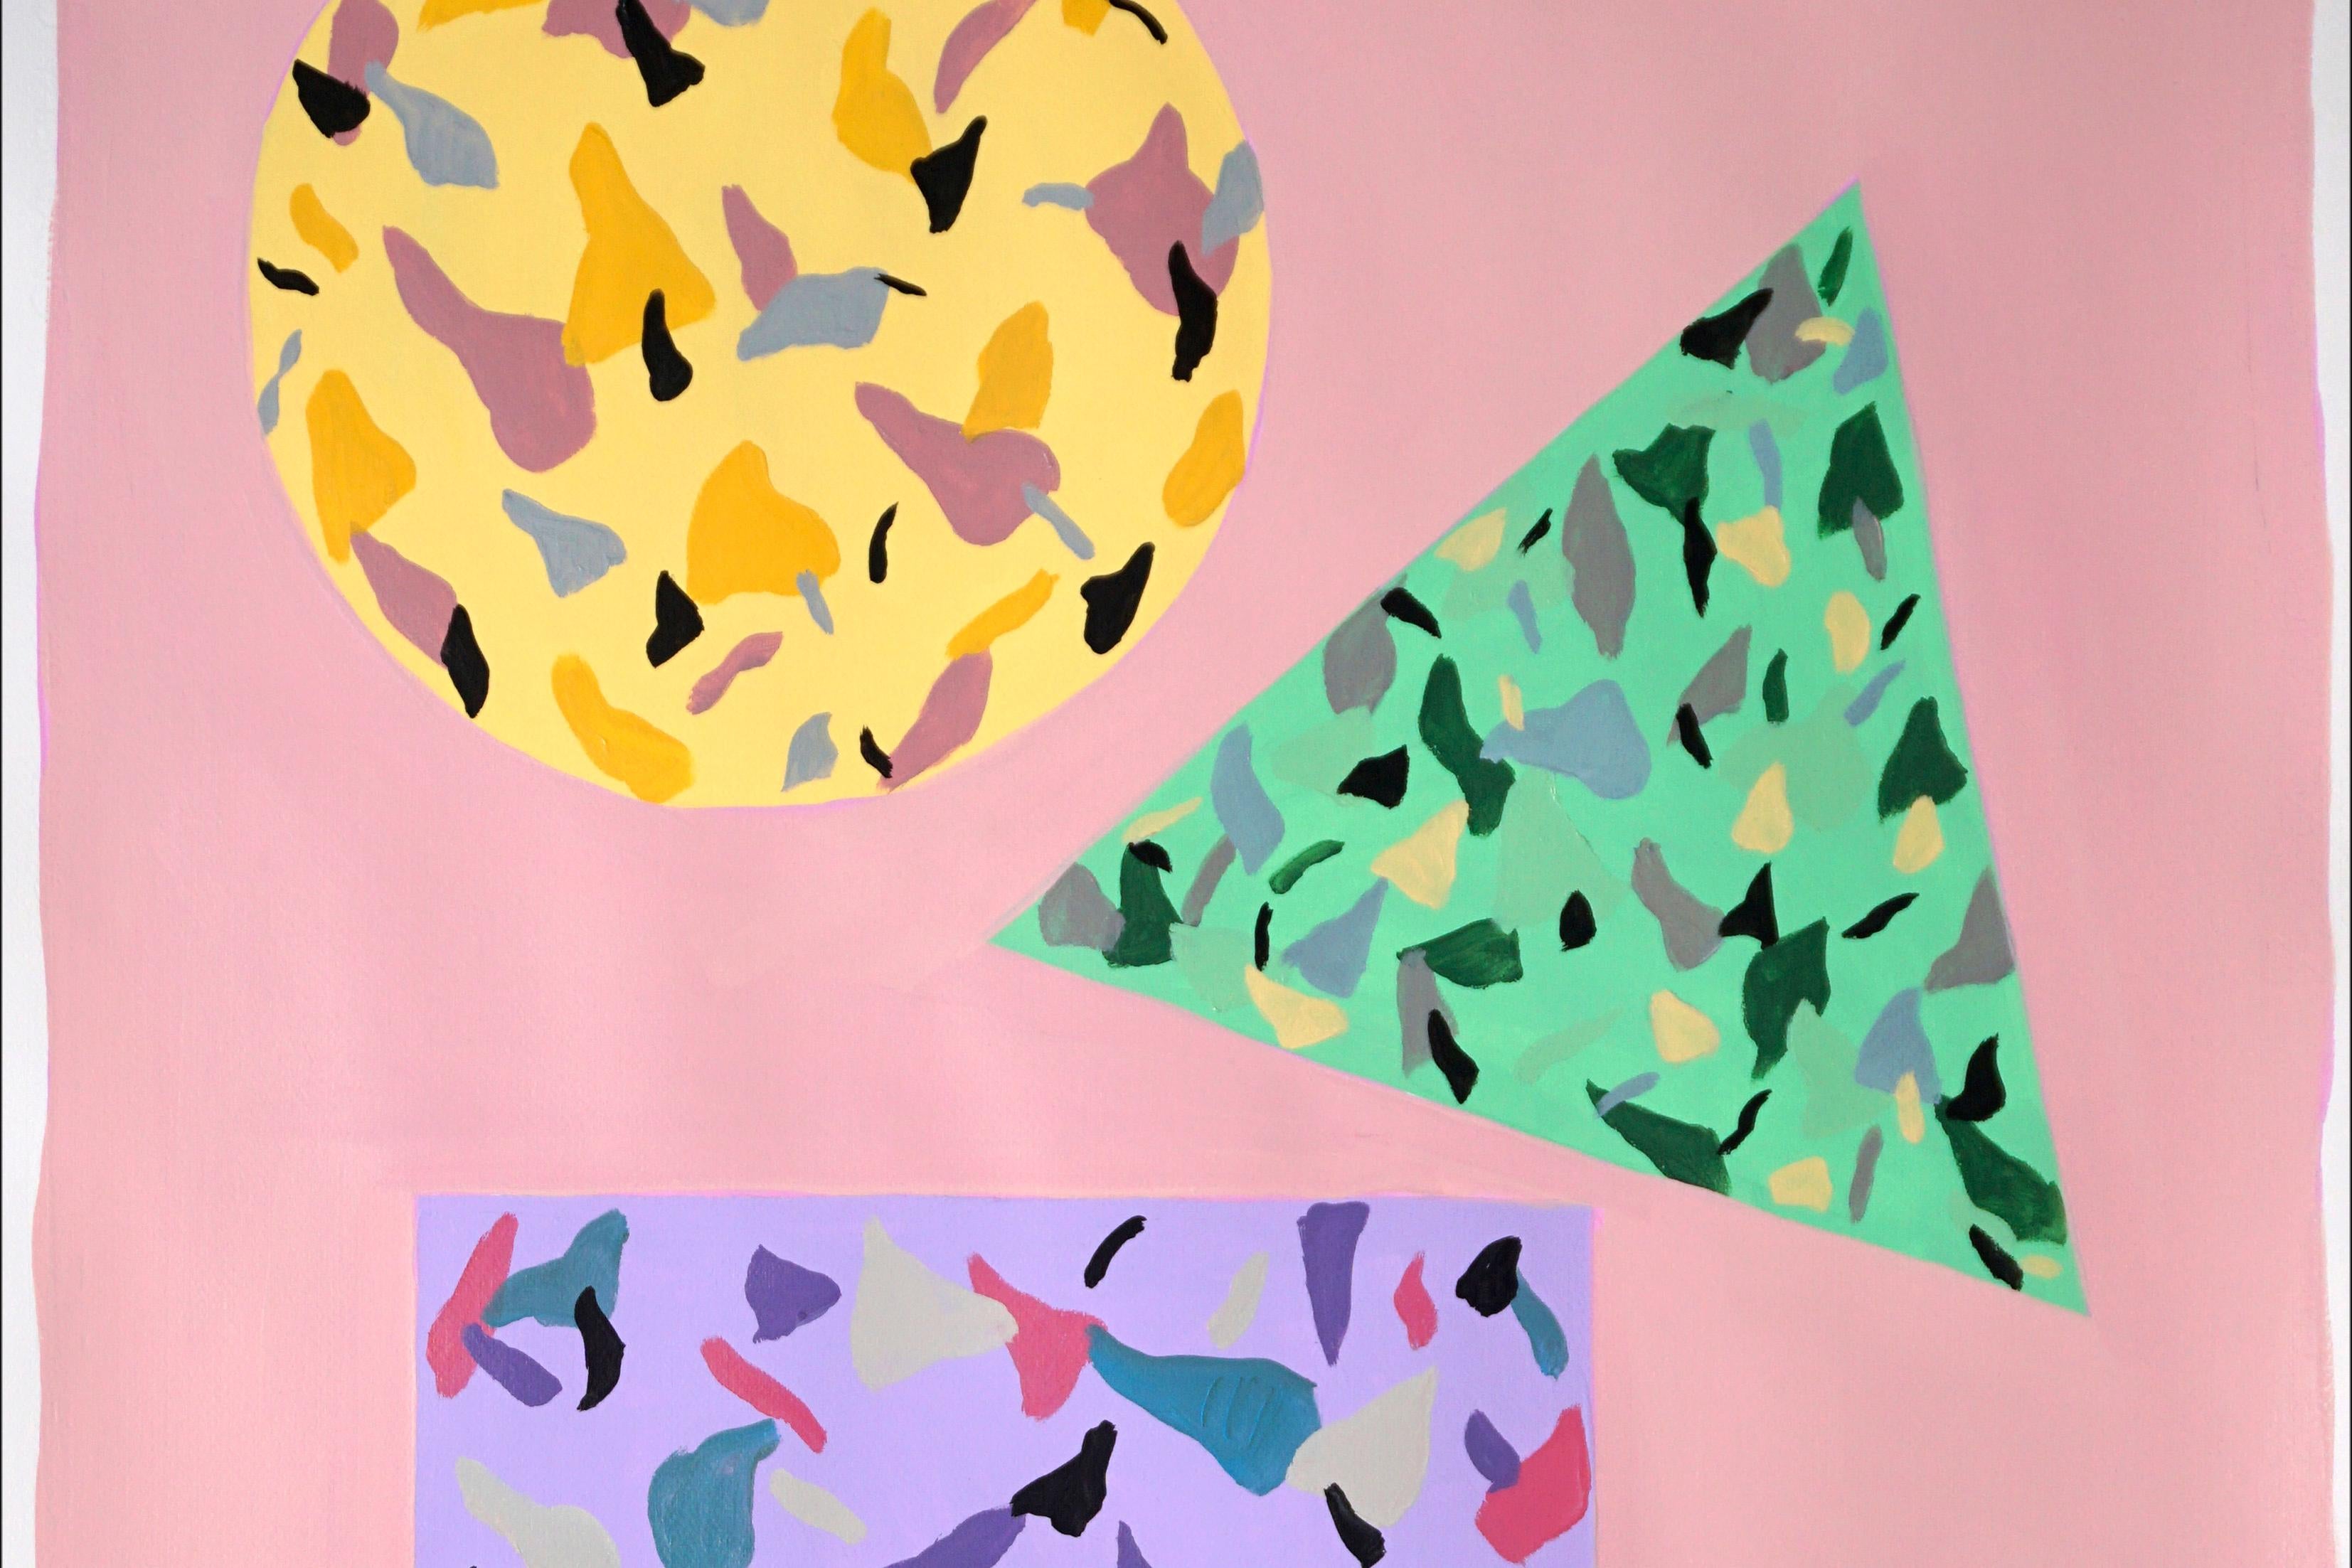 Quadratische, kreisförmige und dreieckige Kacheln in Rosa und Gelb, schwebende Geometrie auf Papier (Beige), Still-Life Painting, von Natalia Roman